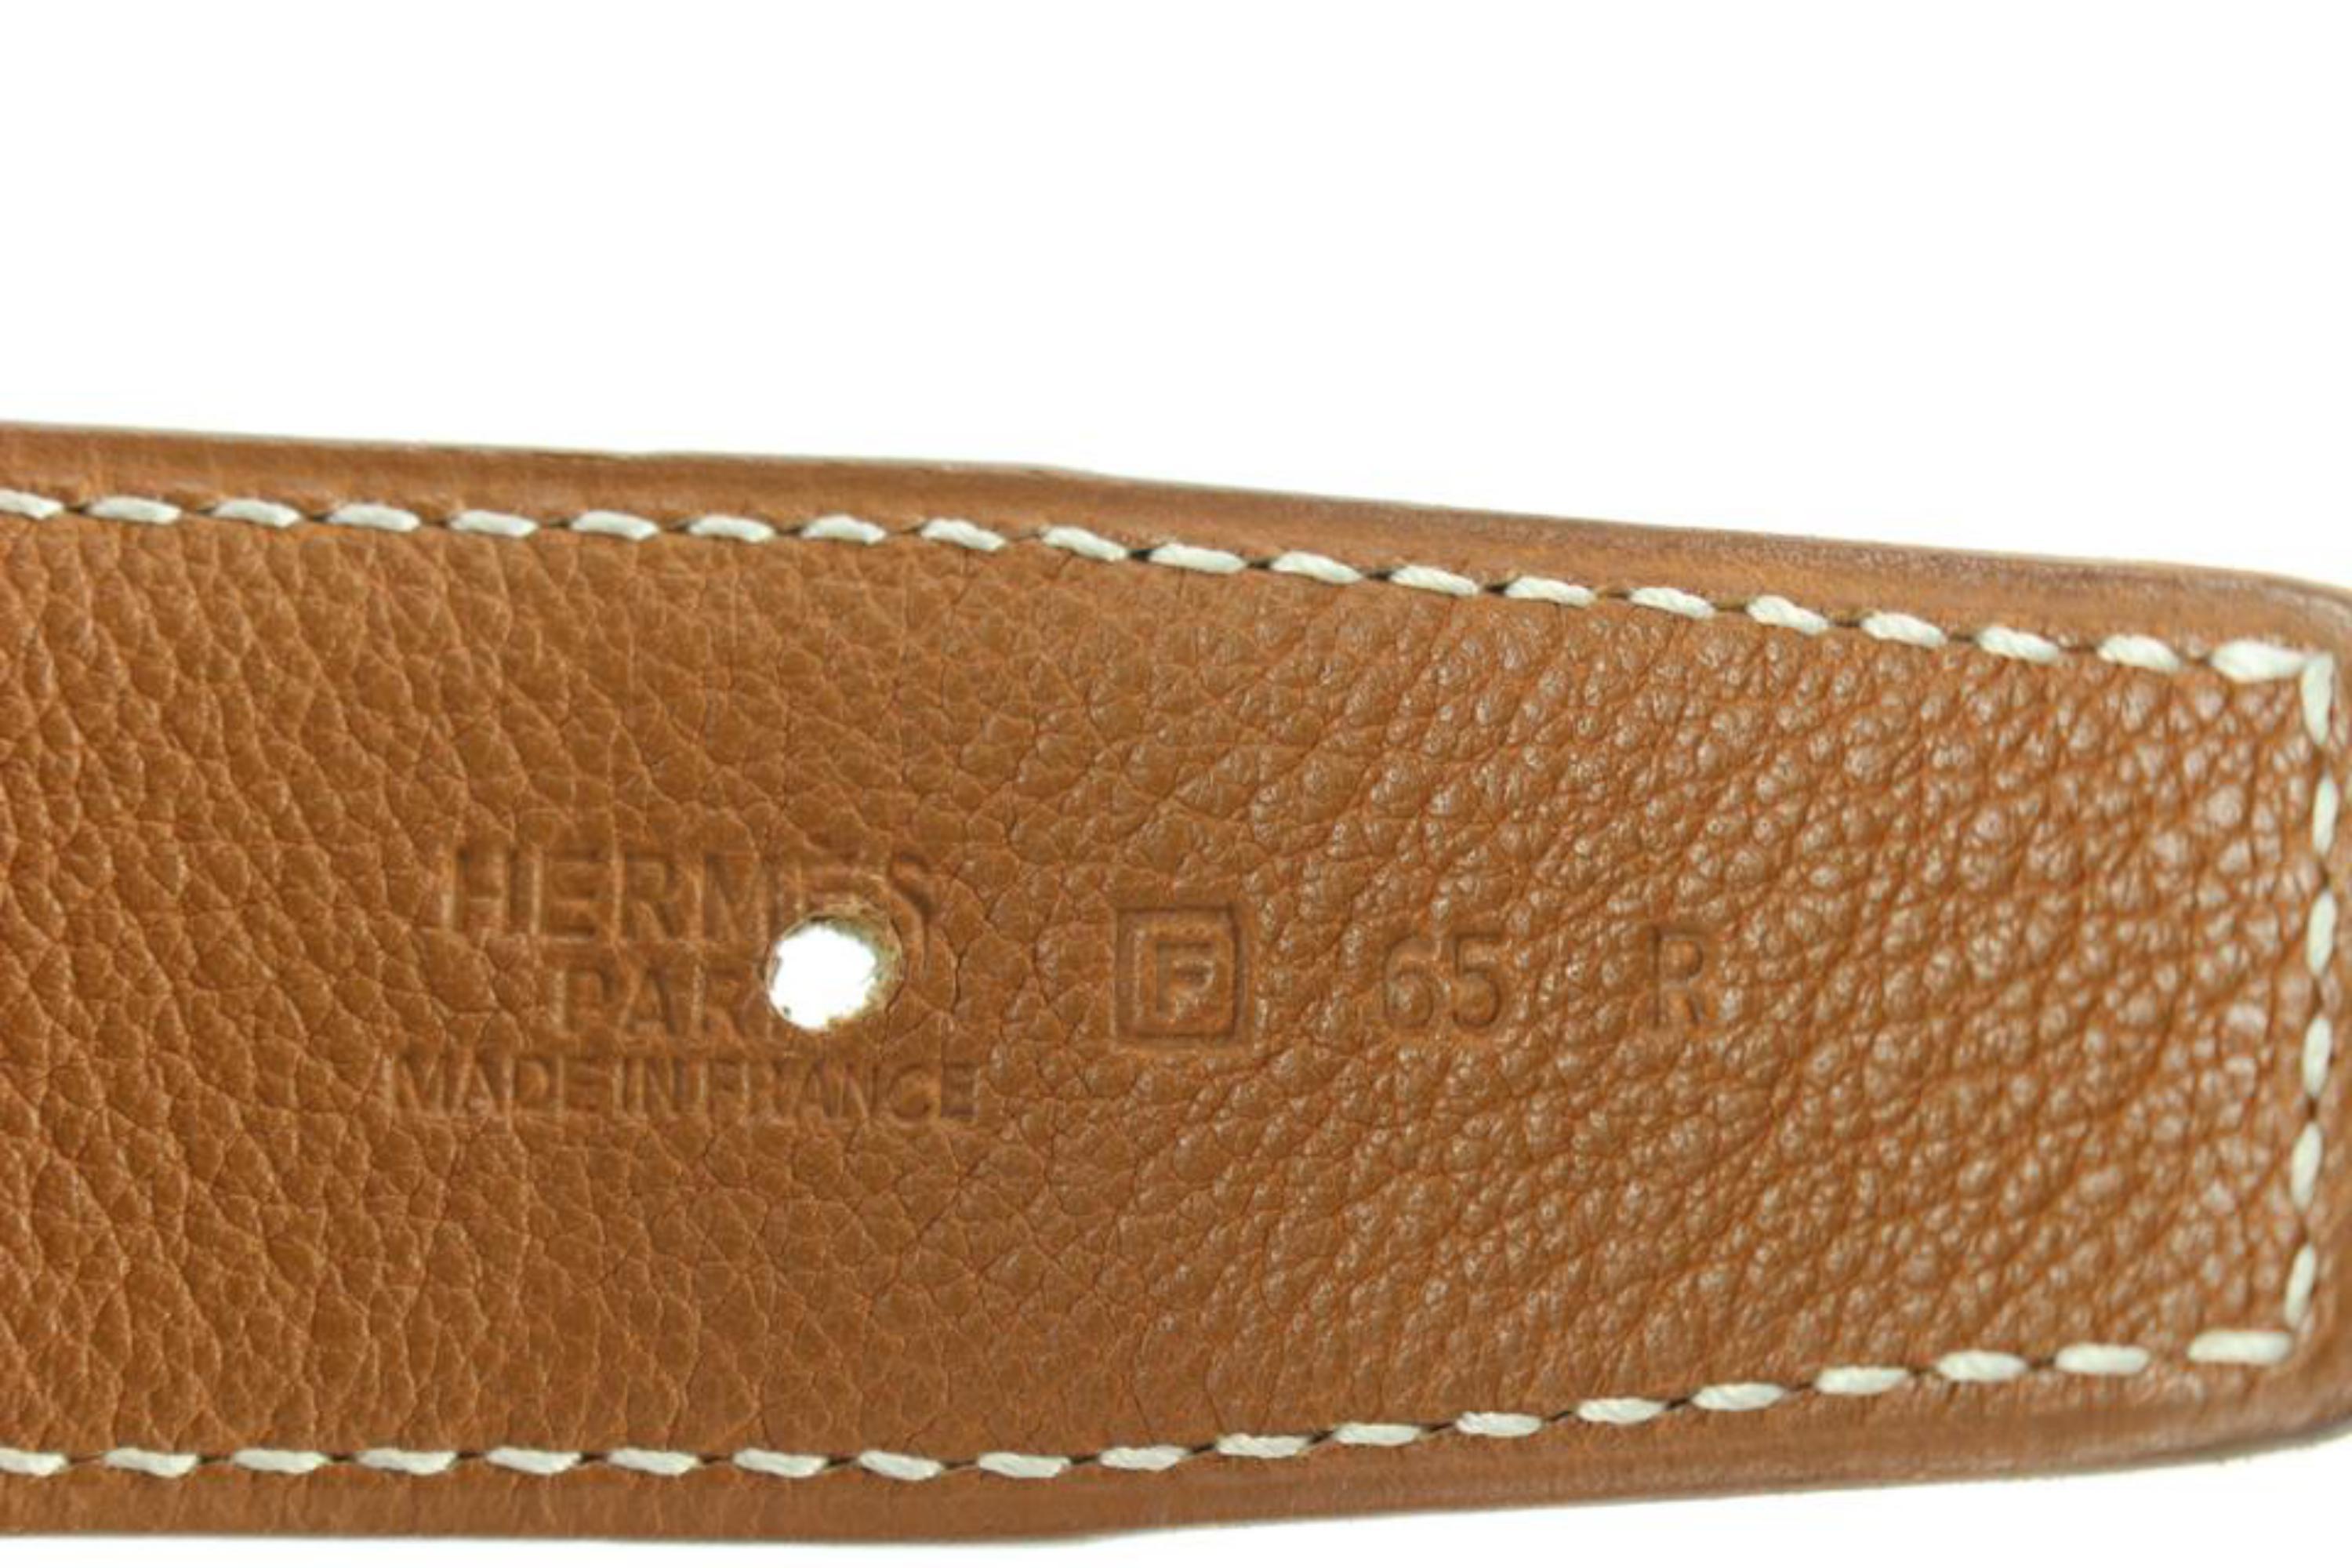 Hermès 32mm Martelee Reversible H Logo Belt Hammered Buckle 85h629s For Sale 3